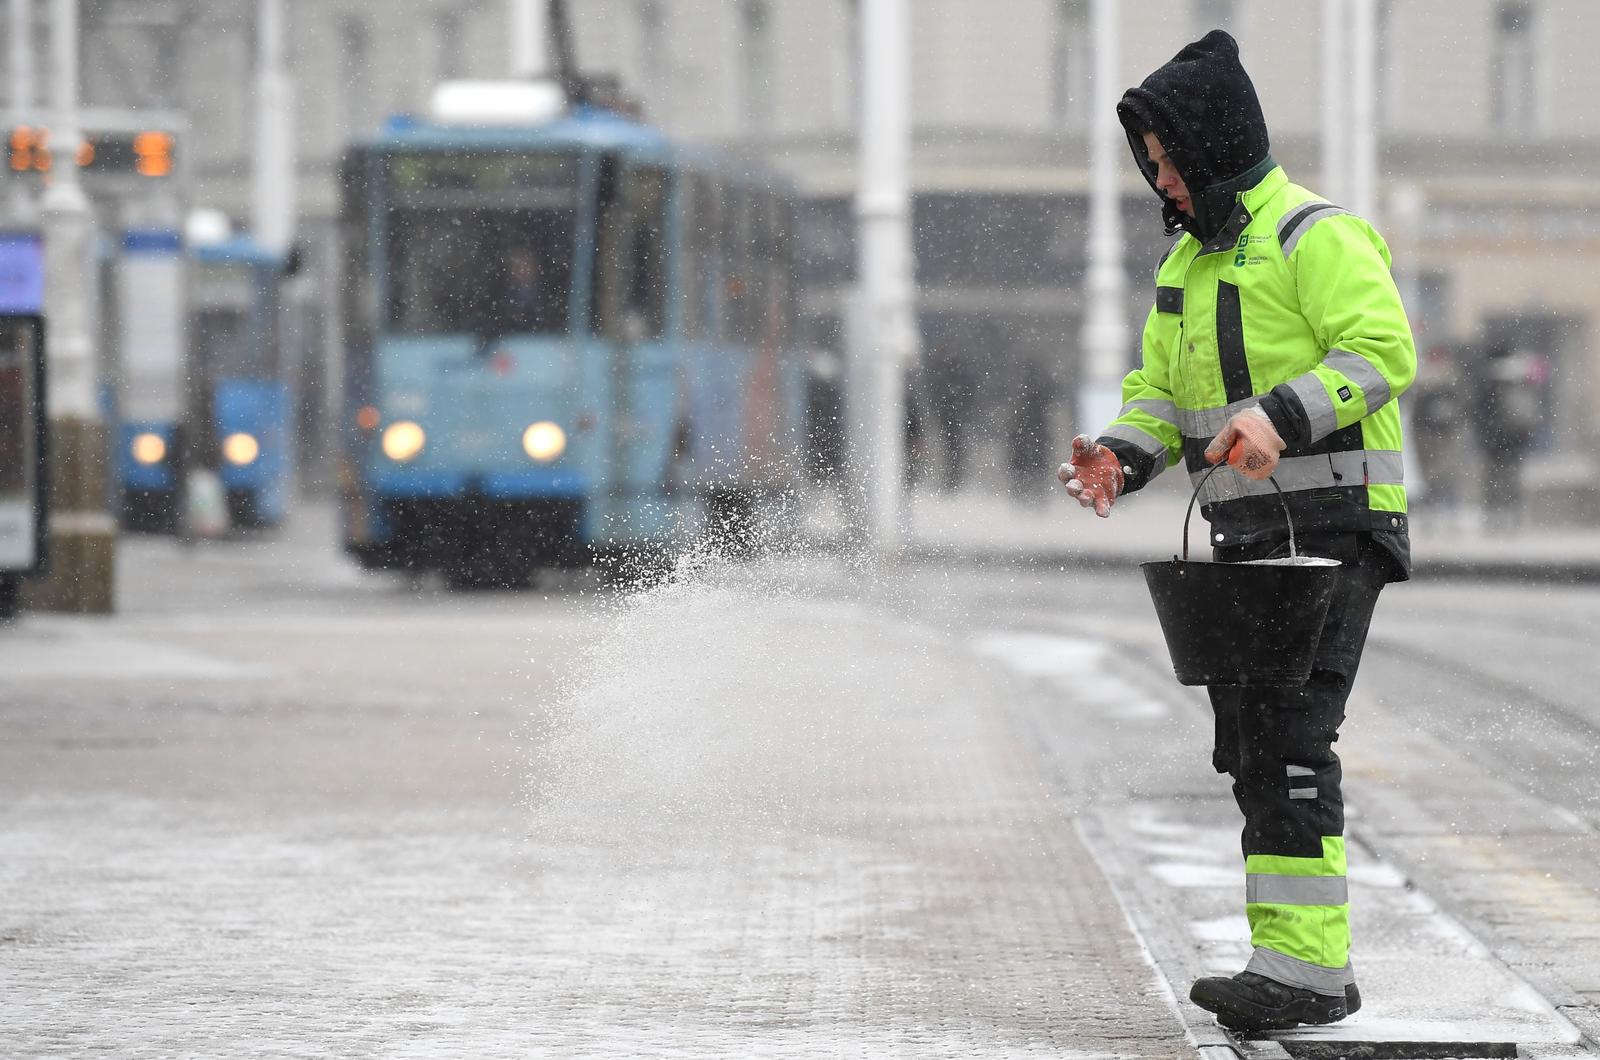 26.02.2018., Zagreb - Djelatnici Cistoce posipaju sol kako se grad nebi zaledio. Photo: Marko Lukunic/PIXSELL